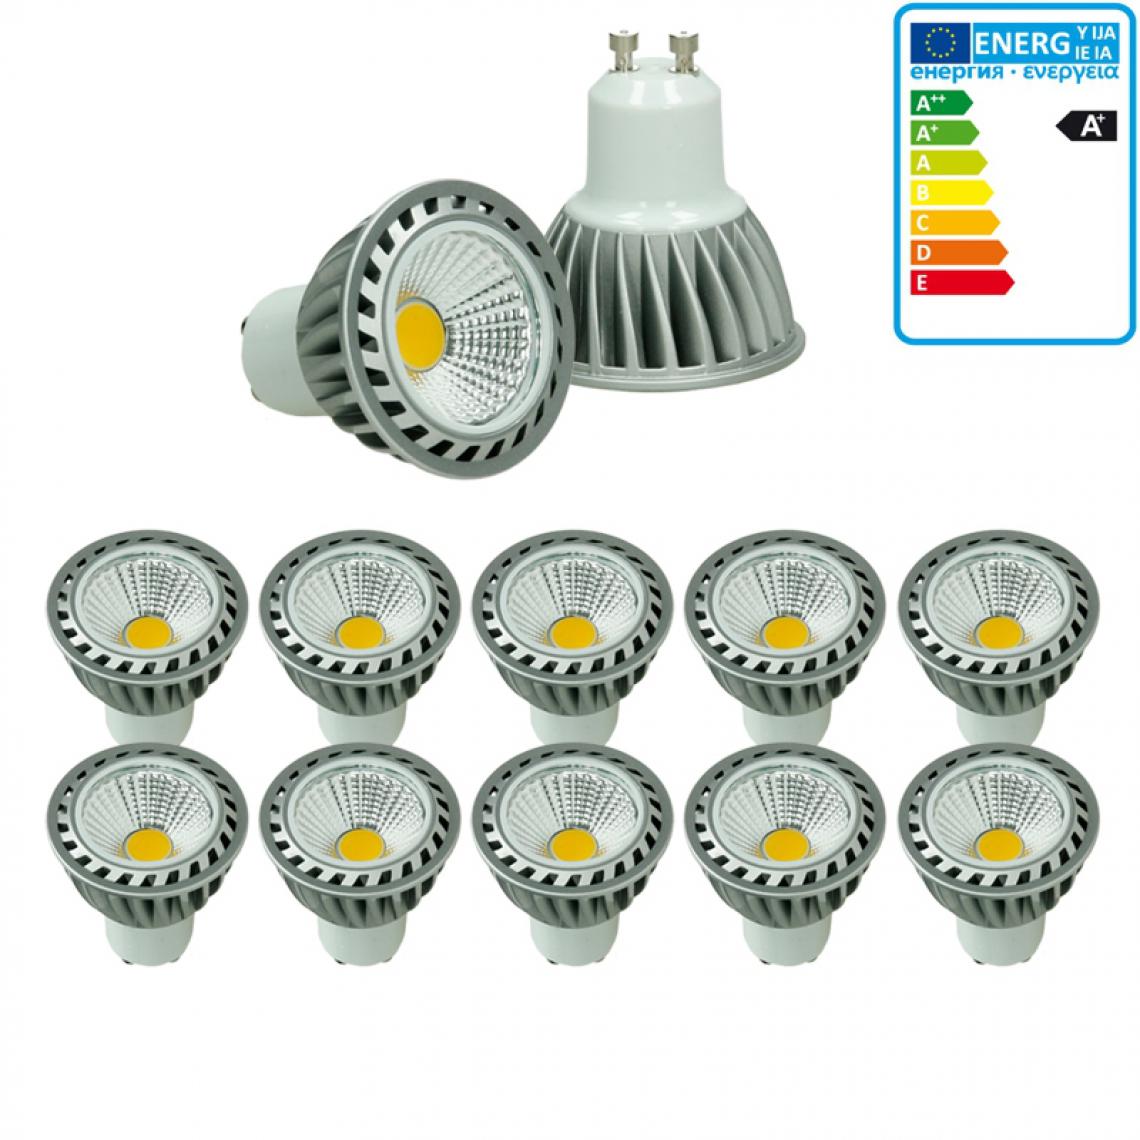 Ecd Germany - ECD Germany 10 x GU10 LED COB Spot 4W Lampe à économie d'énergie 205 lumens remplace Lampe halogène 30W 2800K Blanc Chaud Réglable - Ampoules LED